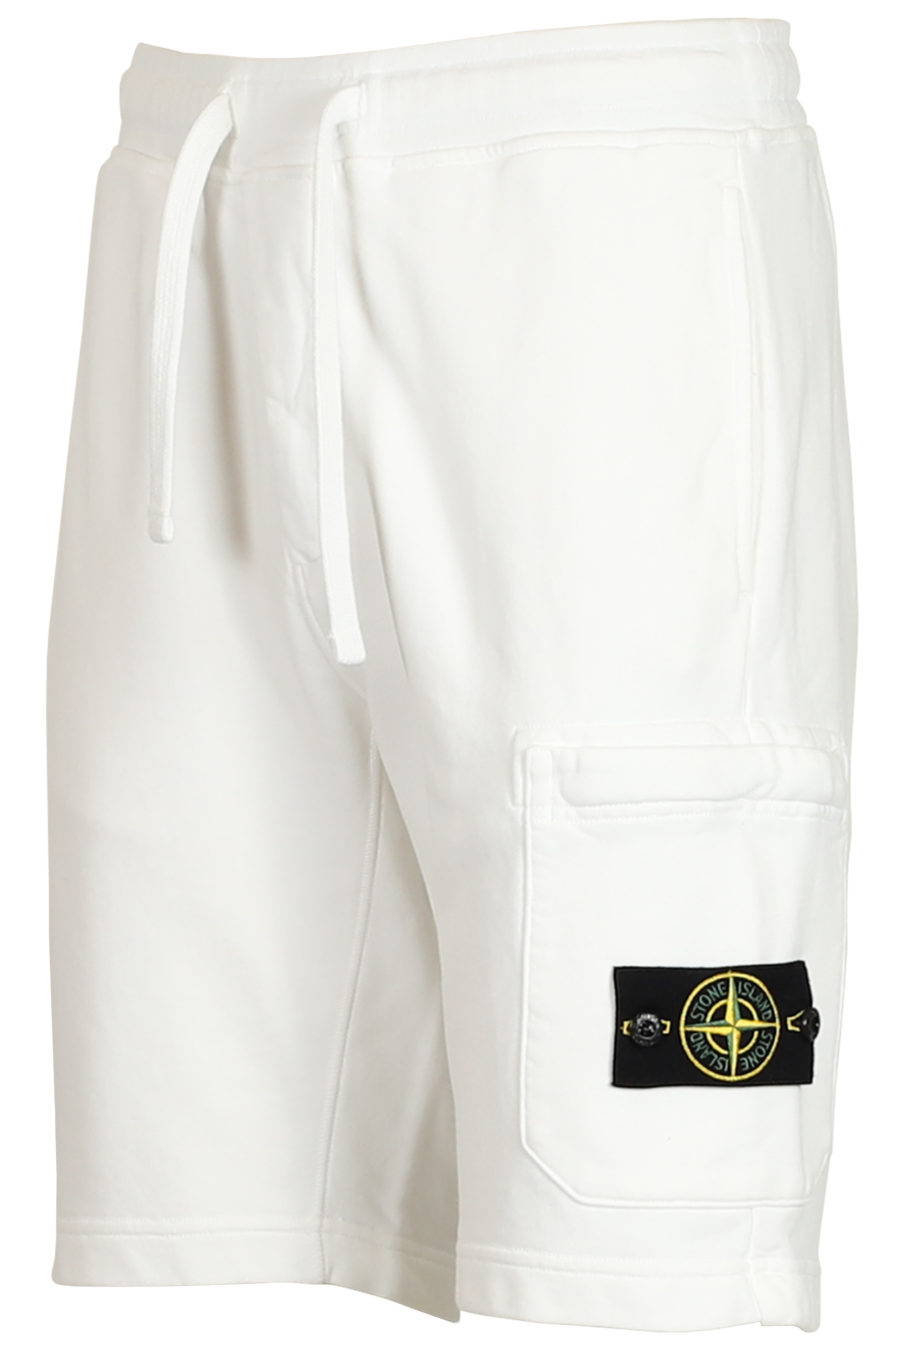 Pantalón corto de chándal blanco - IMG 3771